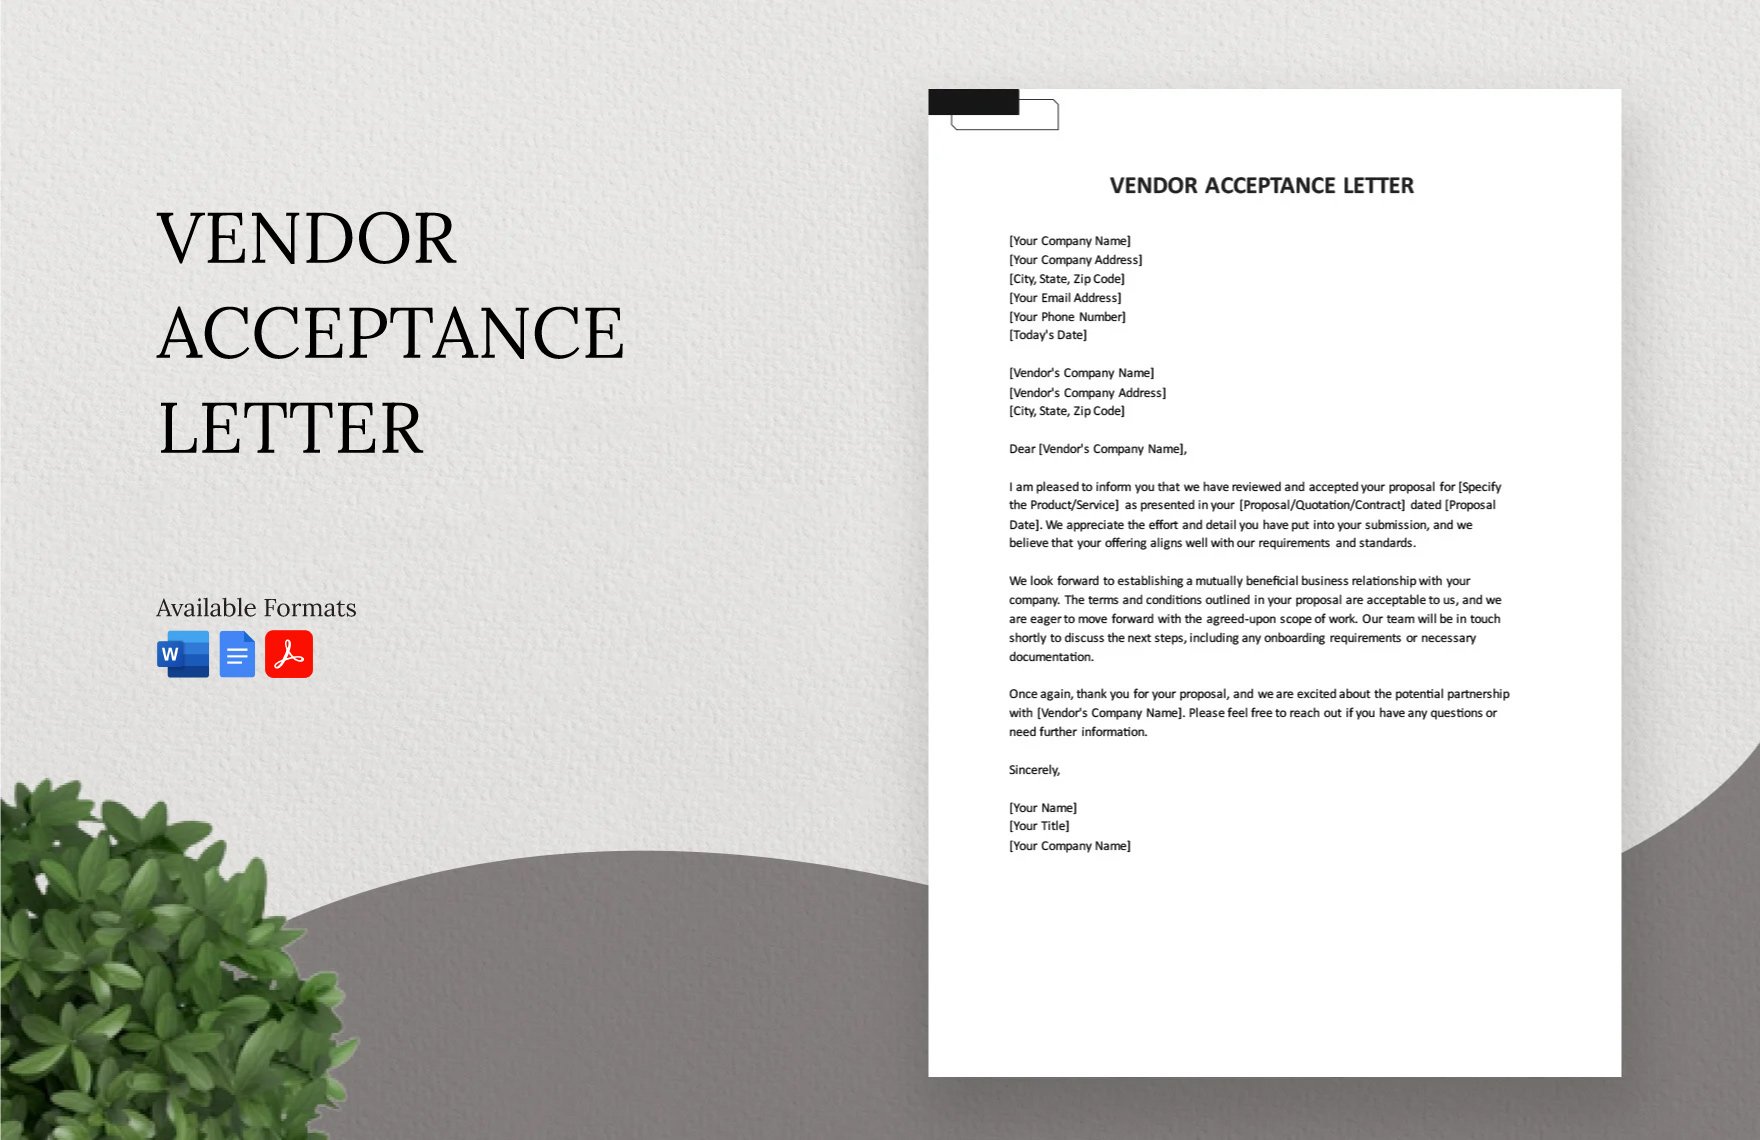 Vendor Acceptance Letter in Word, Google Docs, PDF